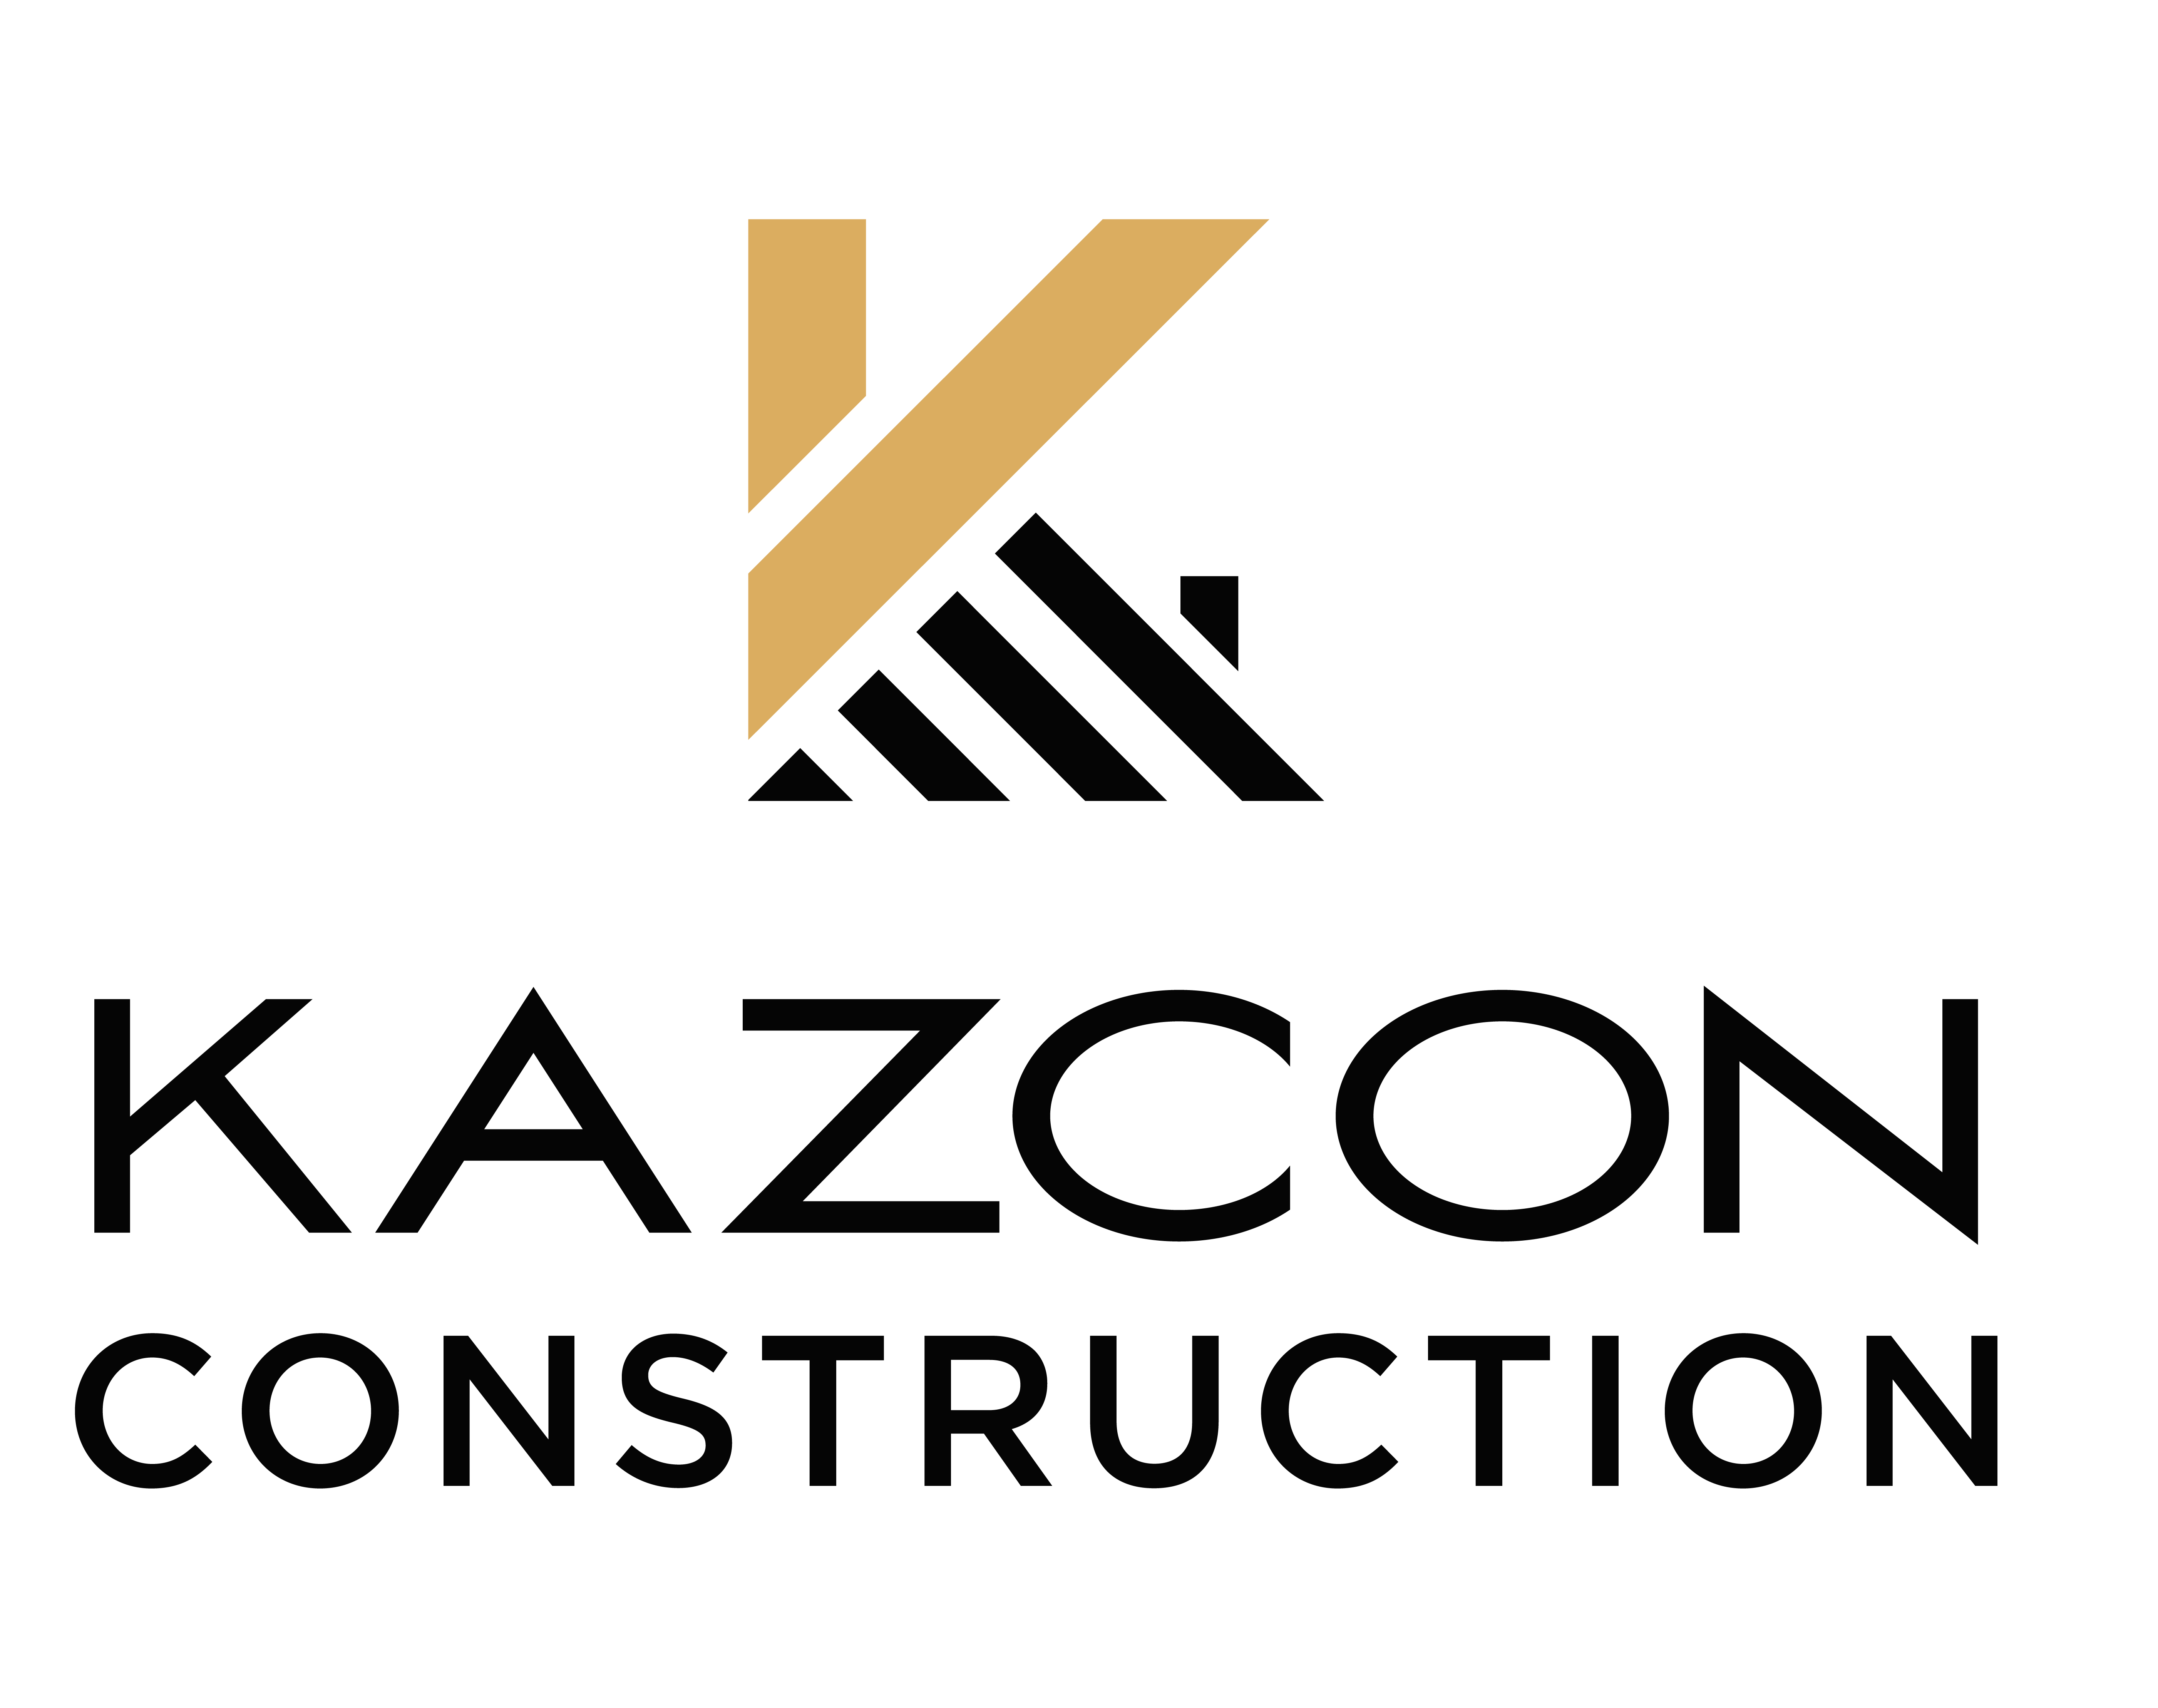 Kazcon Construction's logo